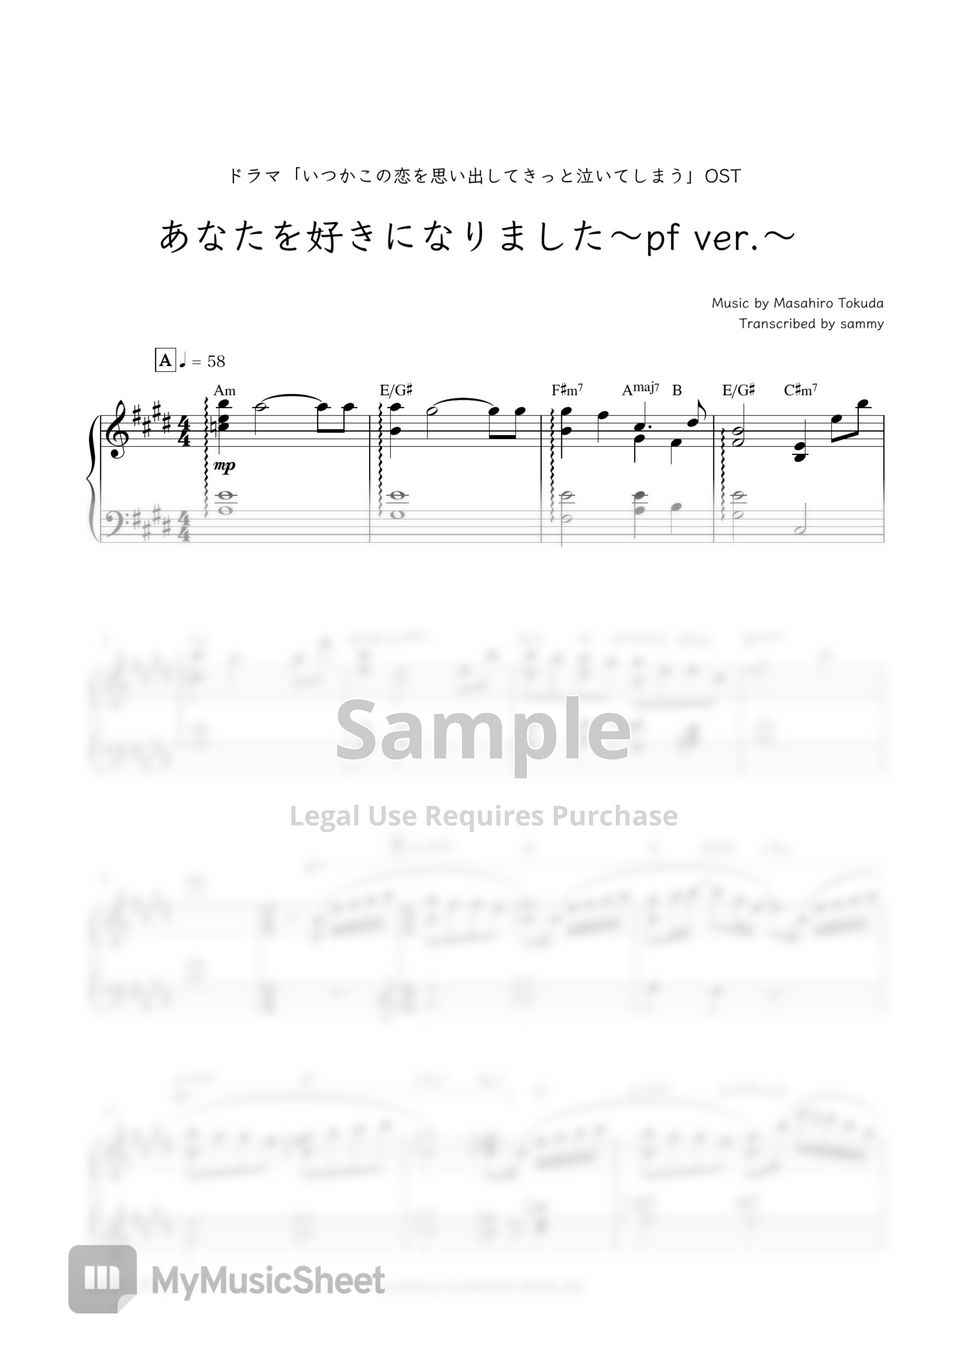 Japanese Drama "Love That Makes You Cry (いつかこの恋を思い出してきっと泣いてしまう)" OST - Anata Wo Suki Ni Narimashita ~pf ver.~ (あなたを好きになりました ~pf ver.~) by sammy